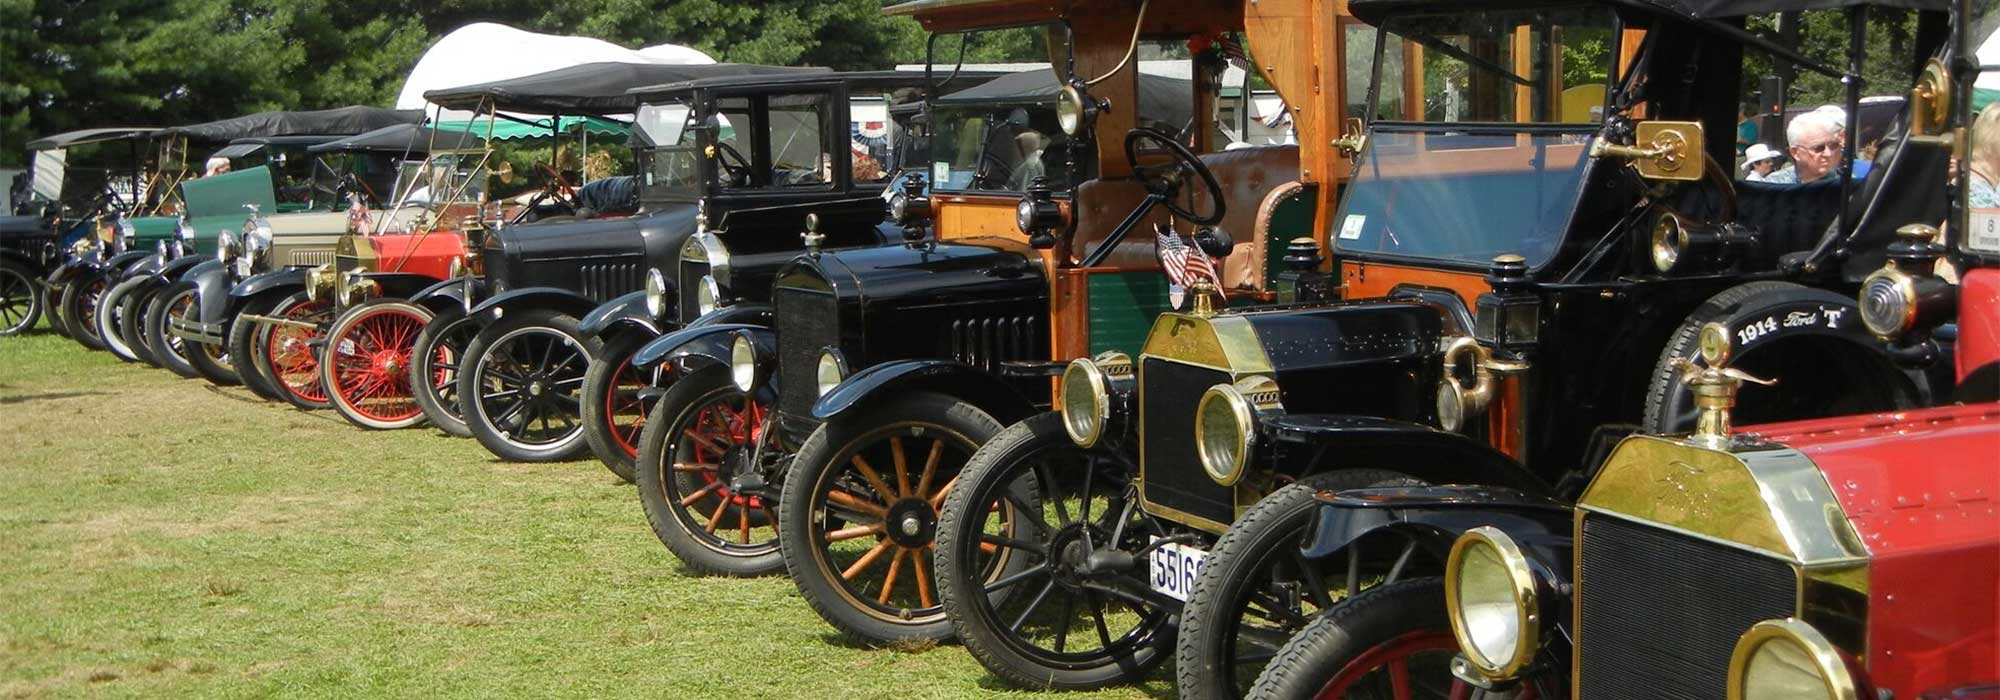 Antique Cars | Annual Marshfield Fair Events